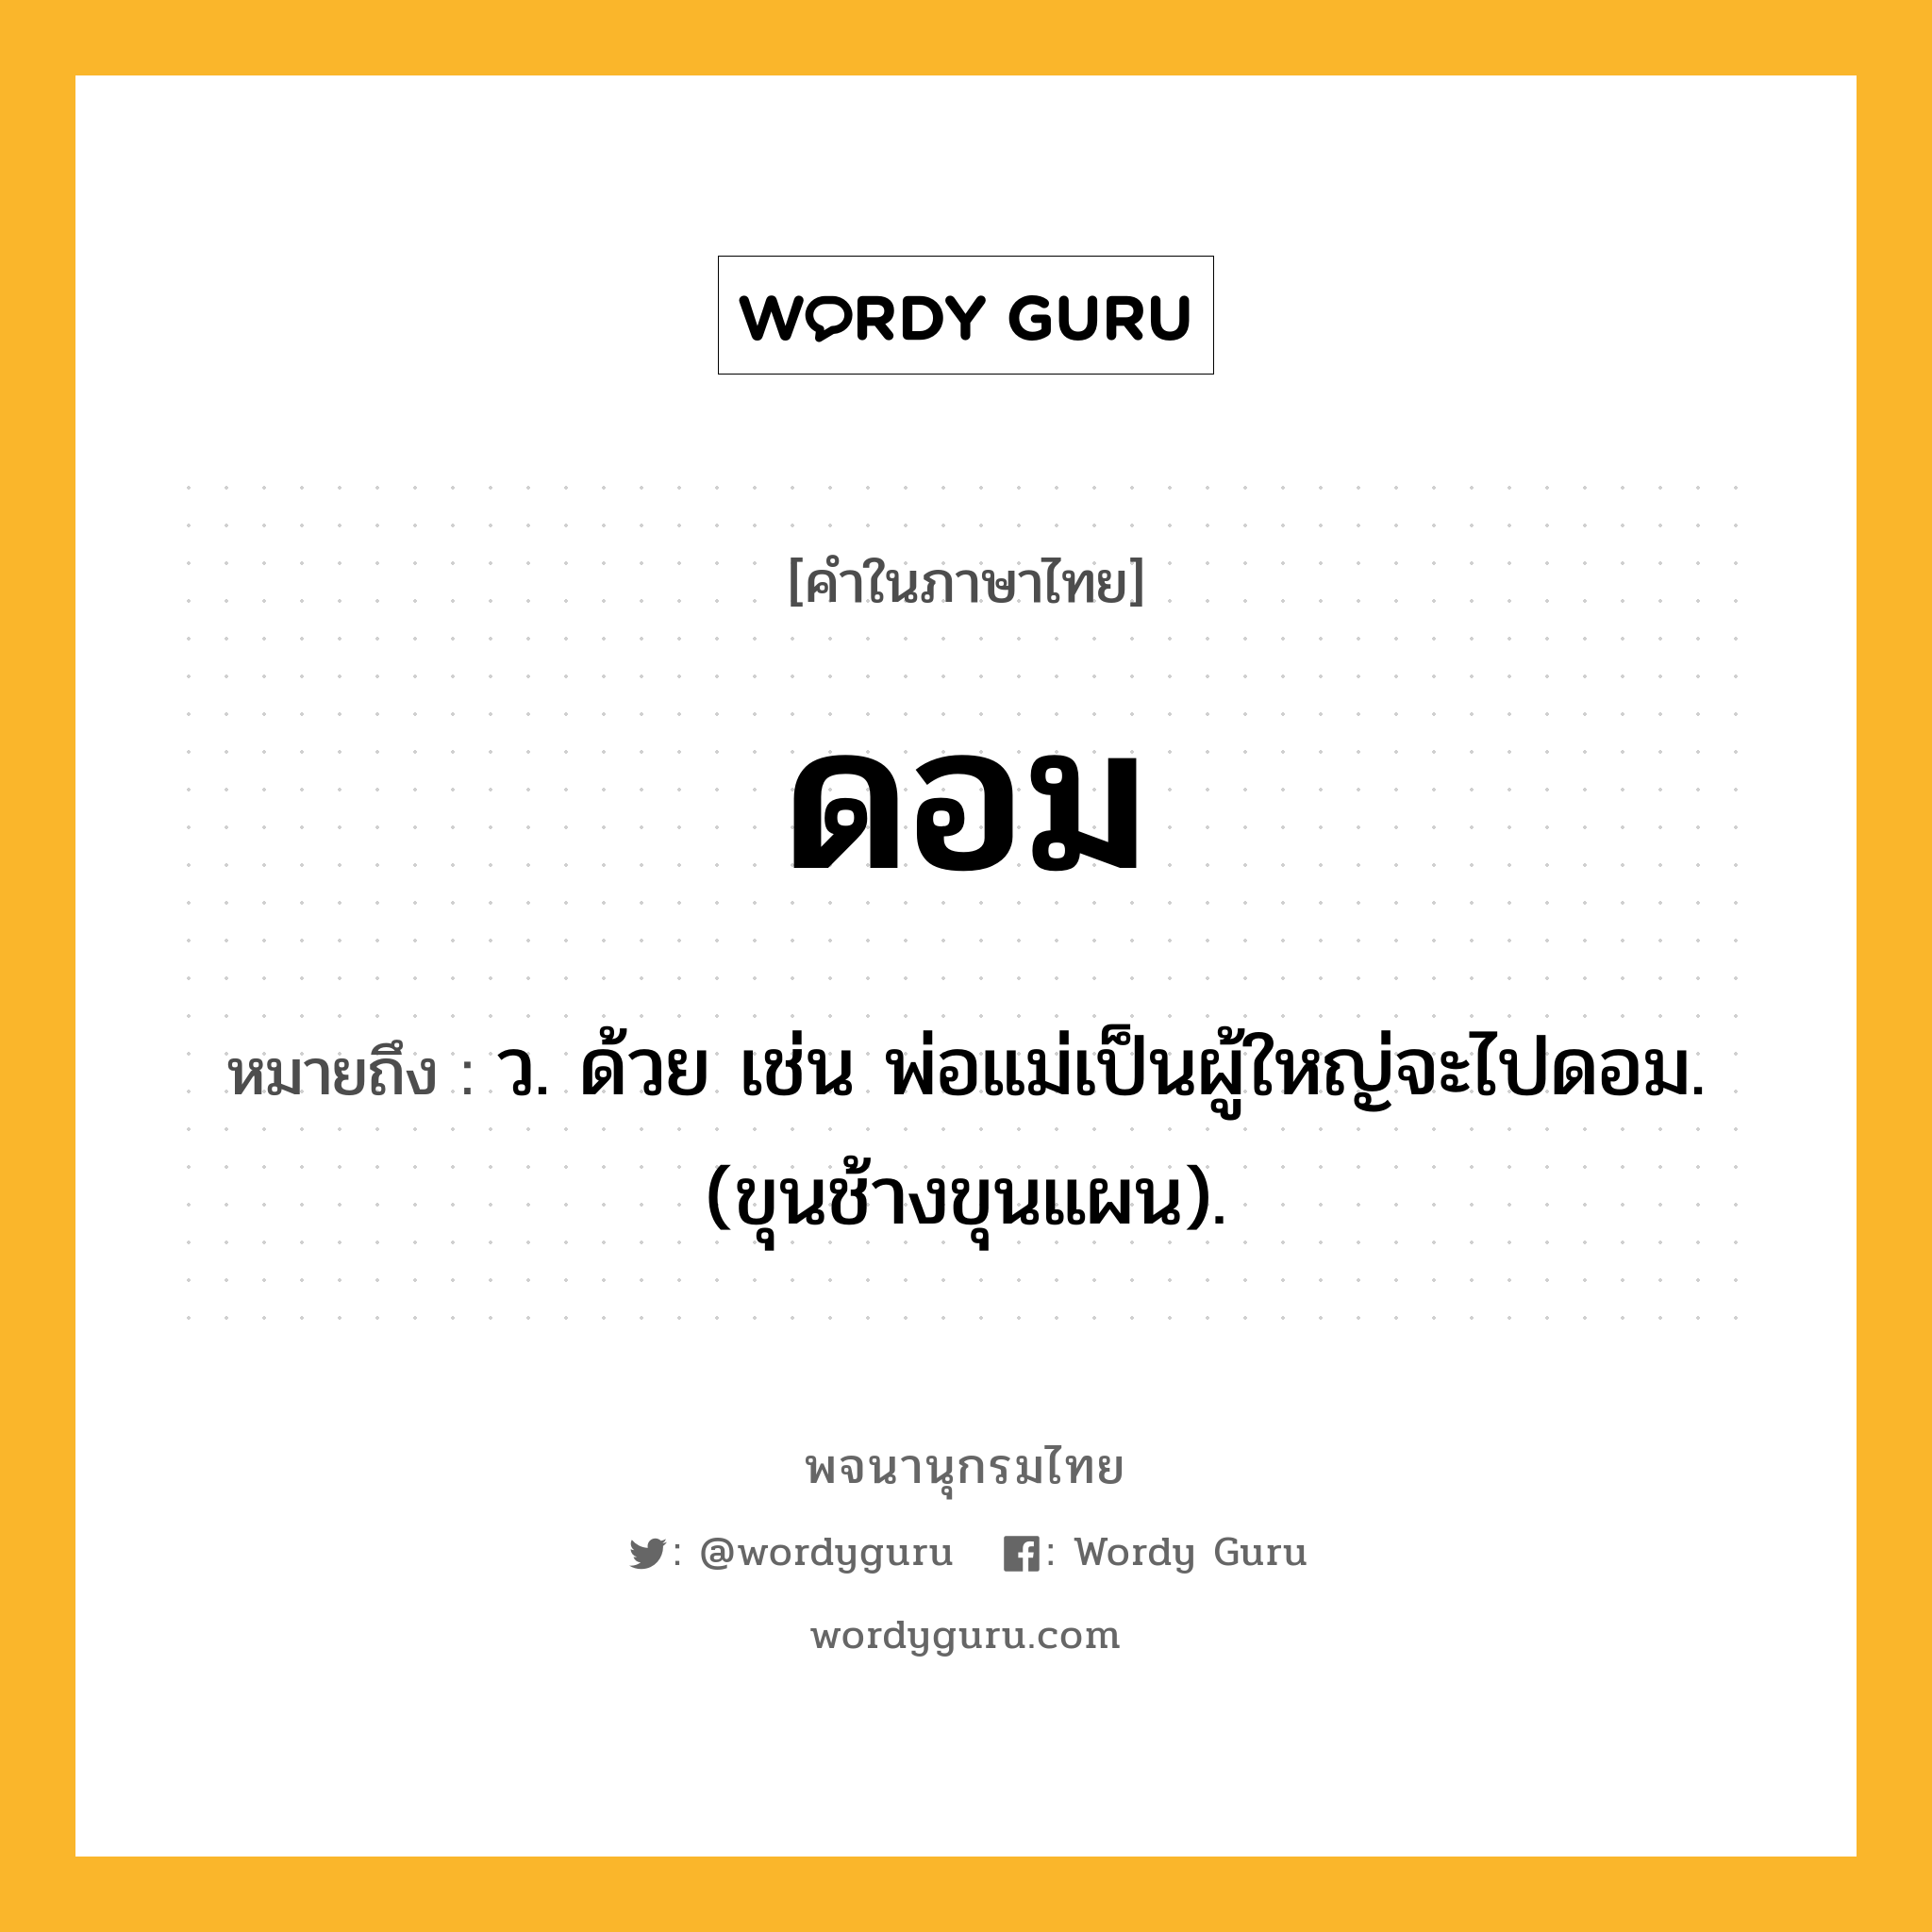 ดอม หมายถึงอะไร?, คำในภาษาไทย ดอม หมายถึง ว. ด้วย เช่น พ่อแม่เป็นผู้ใหญ่จะไปดอม. (ขุนช้างขุนแผน).